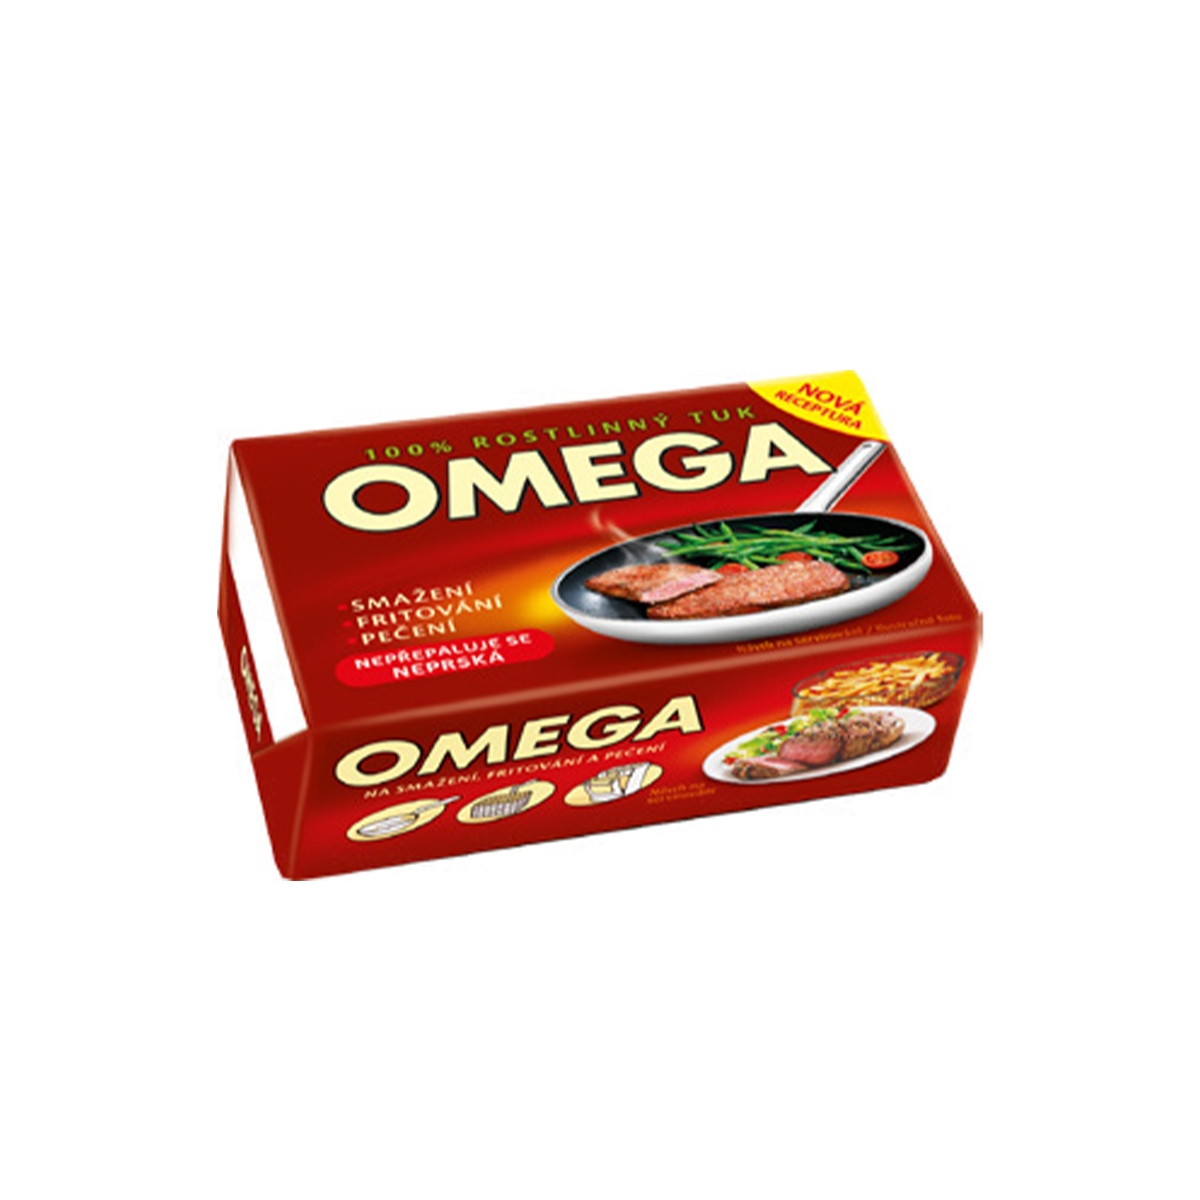 Omega 250 g